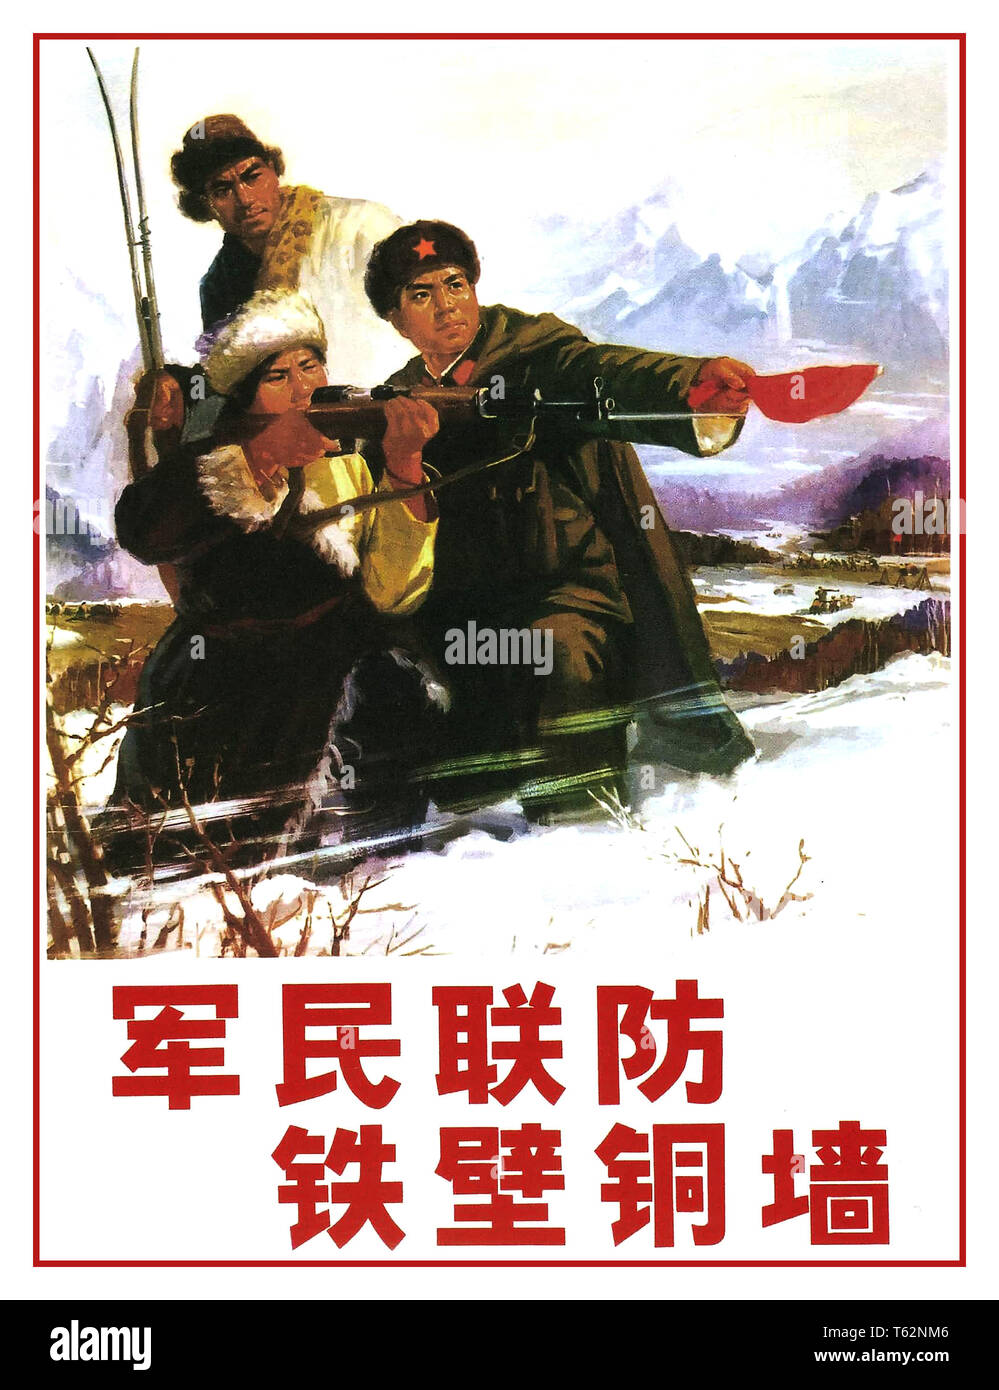 Vintage chinesischen Plakat 1970: Armee und Volk die Bewachung der Grenze zusammen sind eine eiserne Mauer Chinesische Propaganda Poster 1971 mit dem Titel "Die Armee und Volk die Bewachung der Grenze zusammen sind eine eiserne Mauer" im Jahr 1971. Kunstwerke von Chinesischen PLA Chengdu Bezirk. Stockfoto